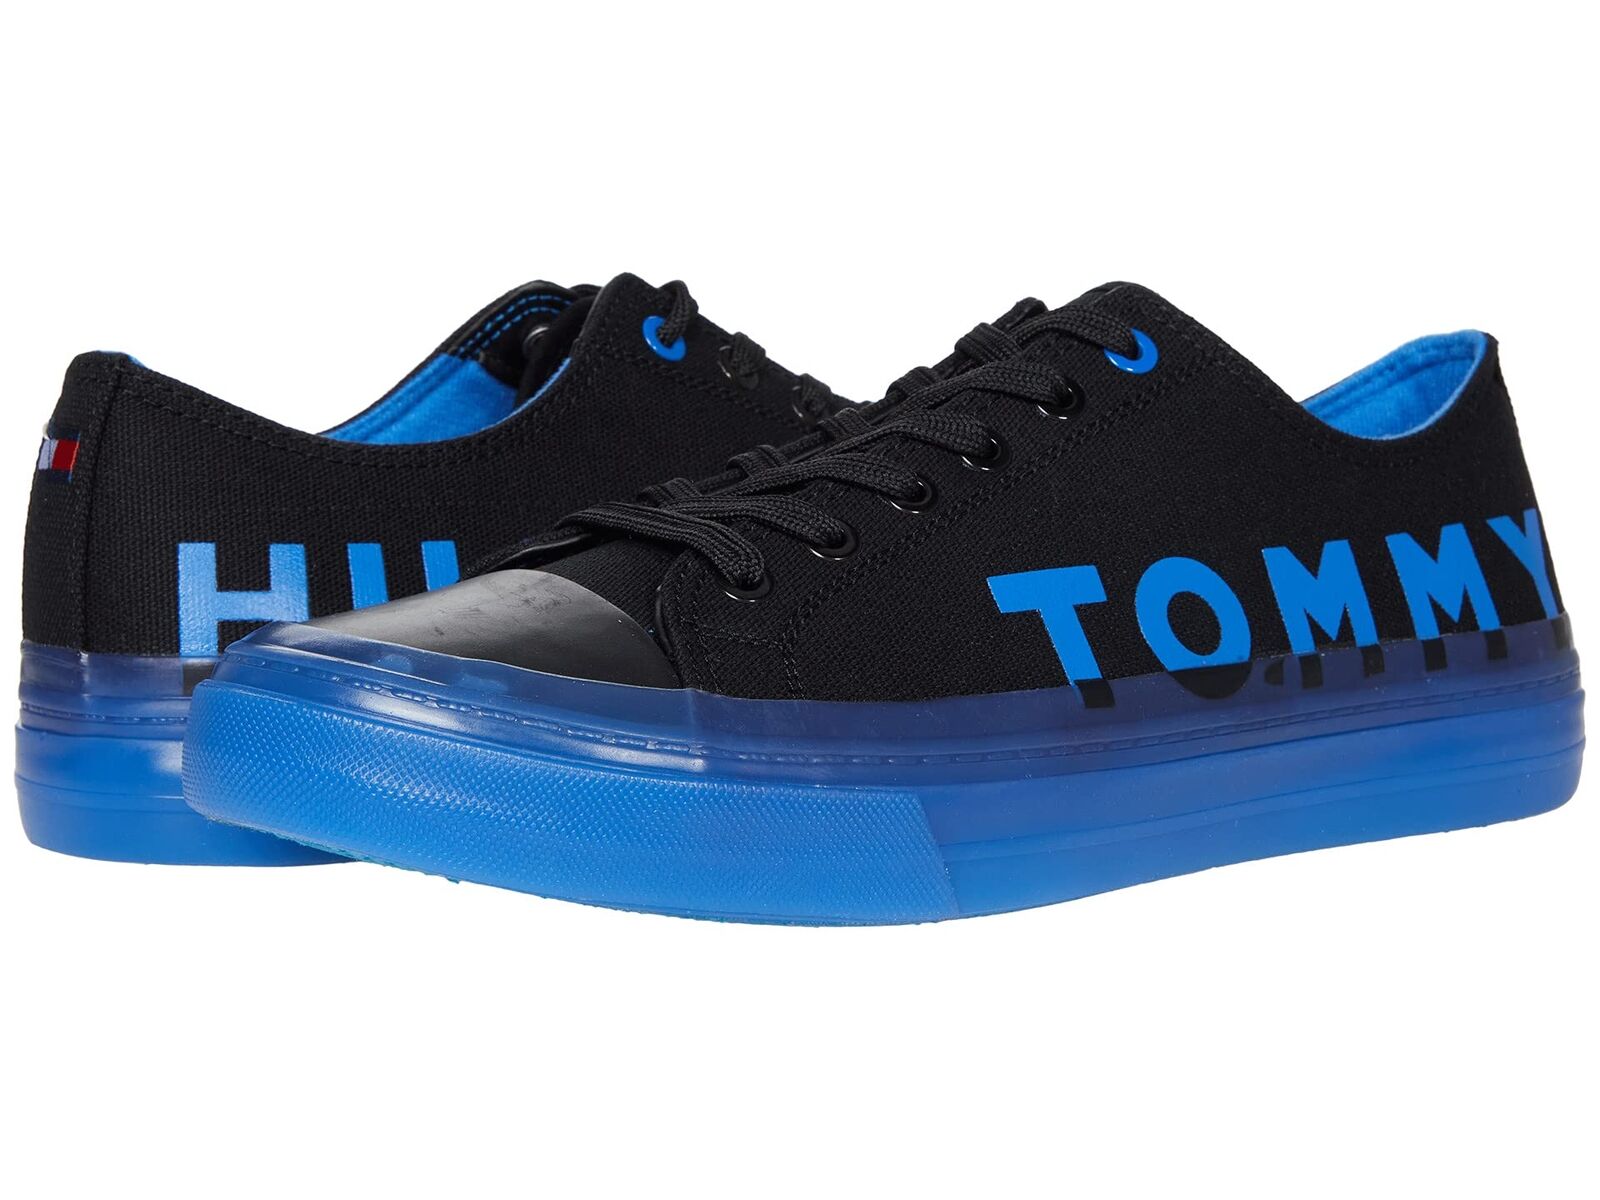 Fancy Tommy Hilfiger Men’s Reids Lifestyle Sneakers Shoes on eBay